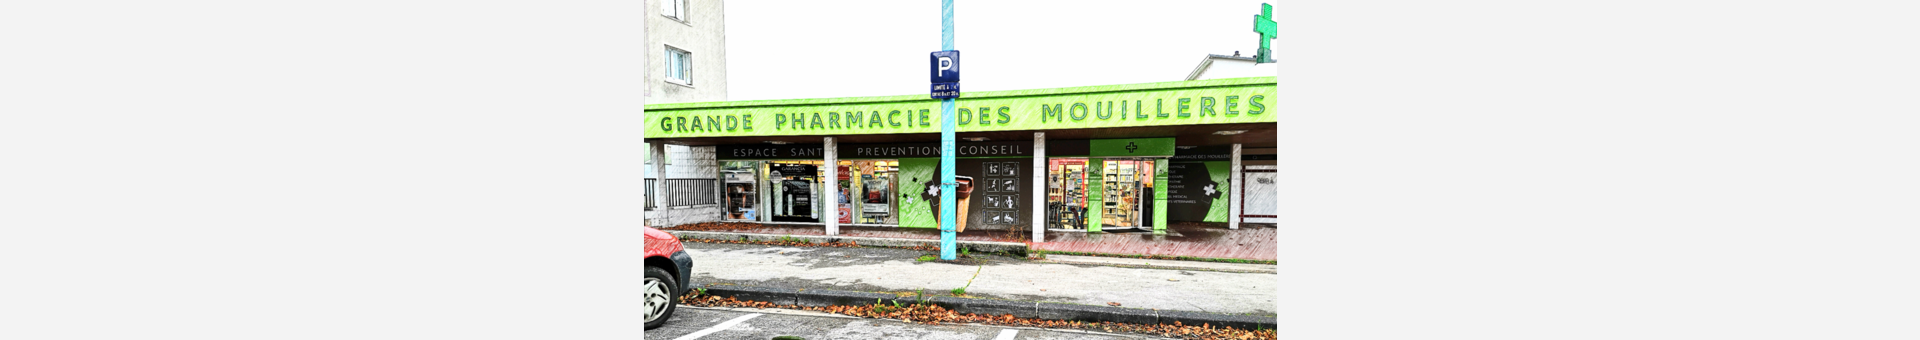 Grande Pharmacie des Mouillères,LONS-LE-SAUNIER